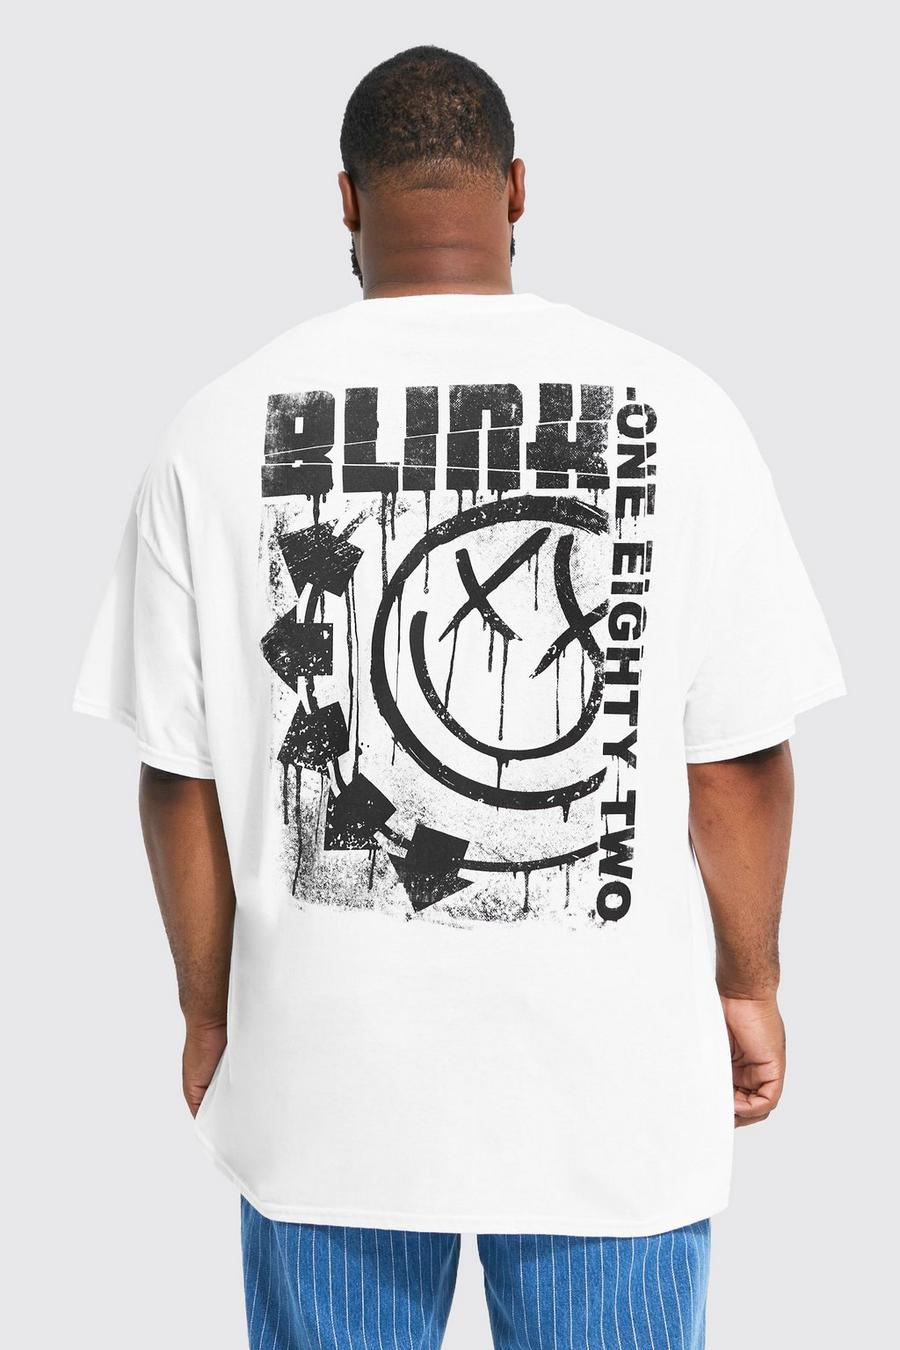 Grande taille - T-shirt à imprimé Blink 182, White